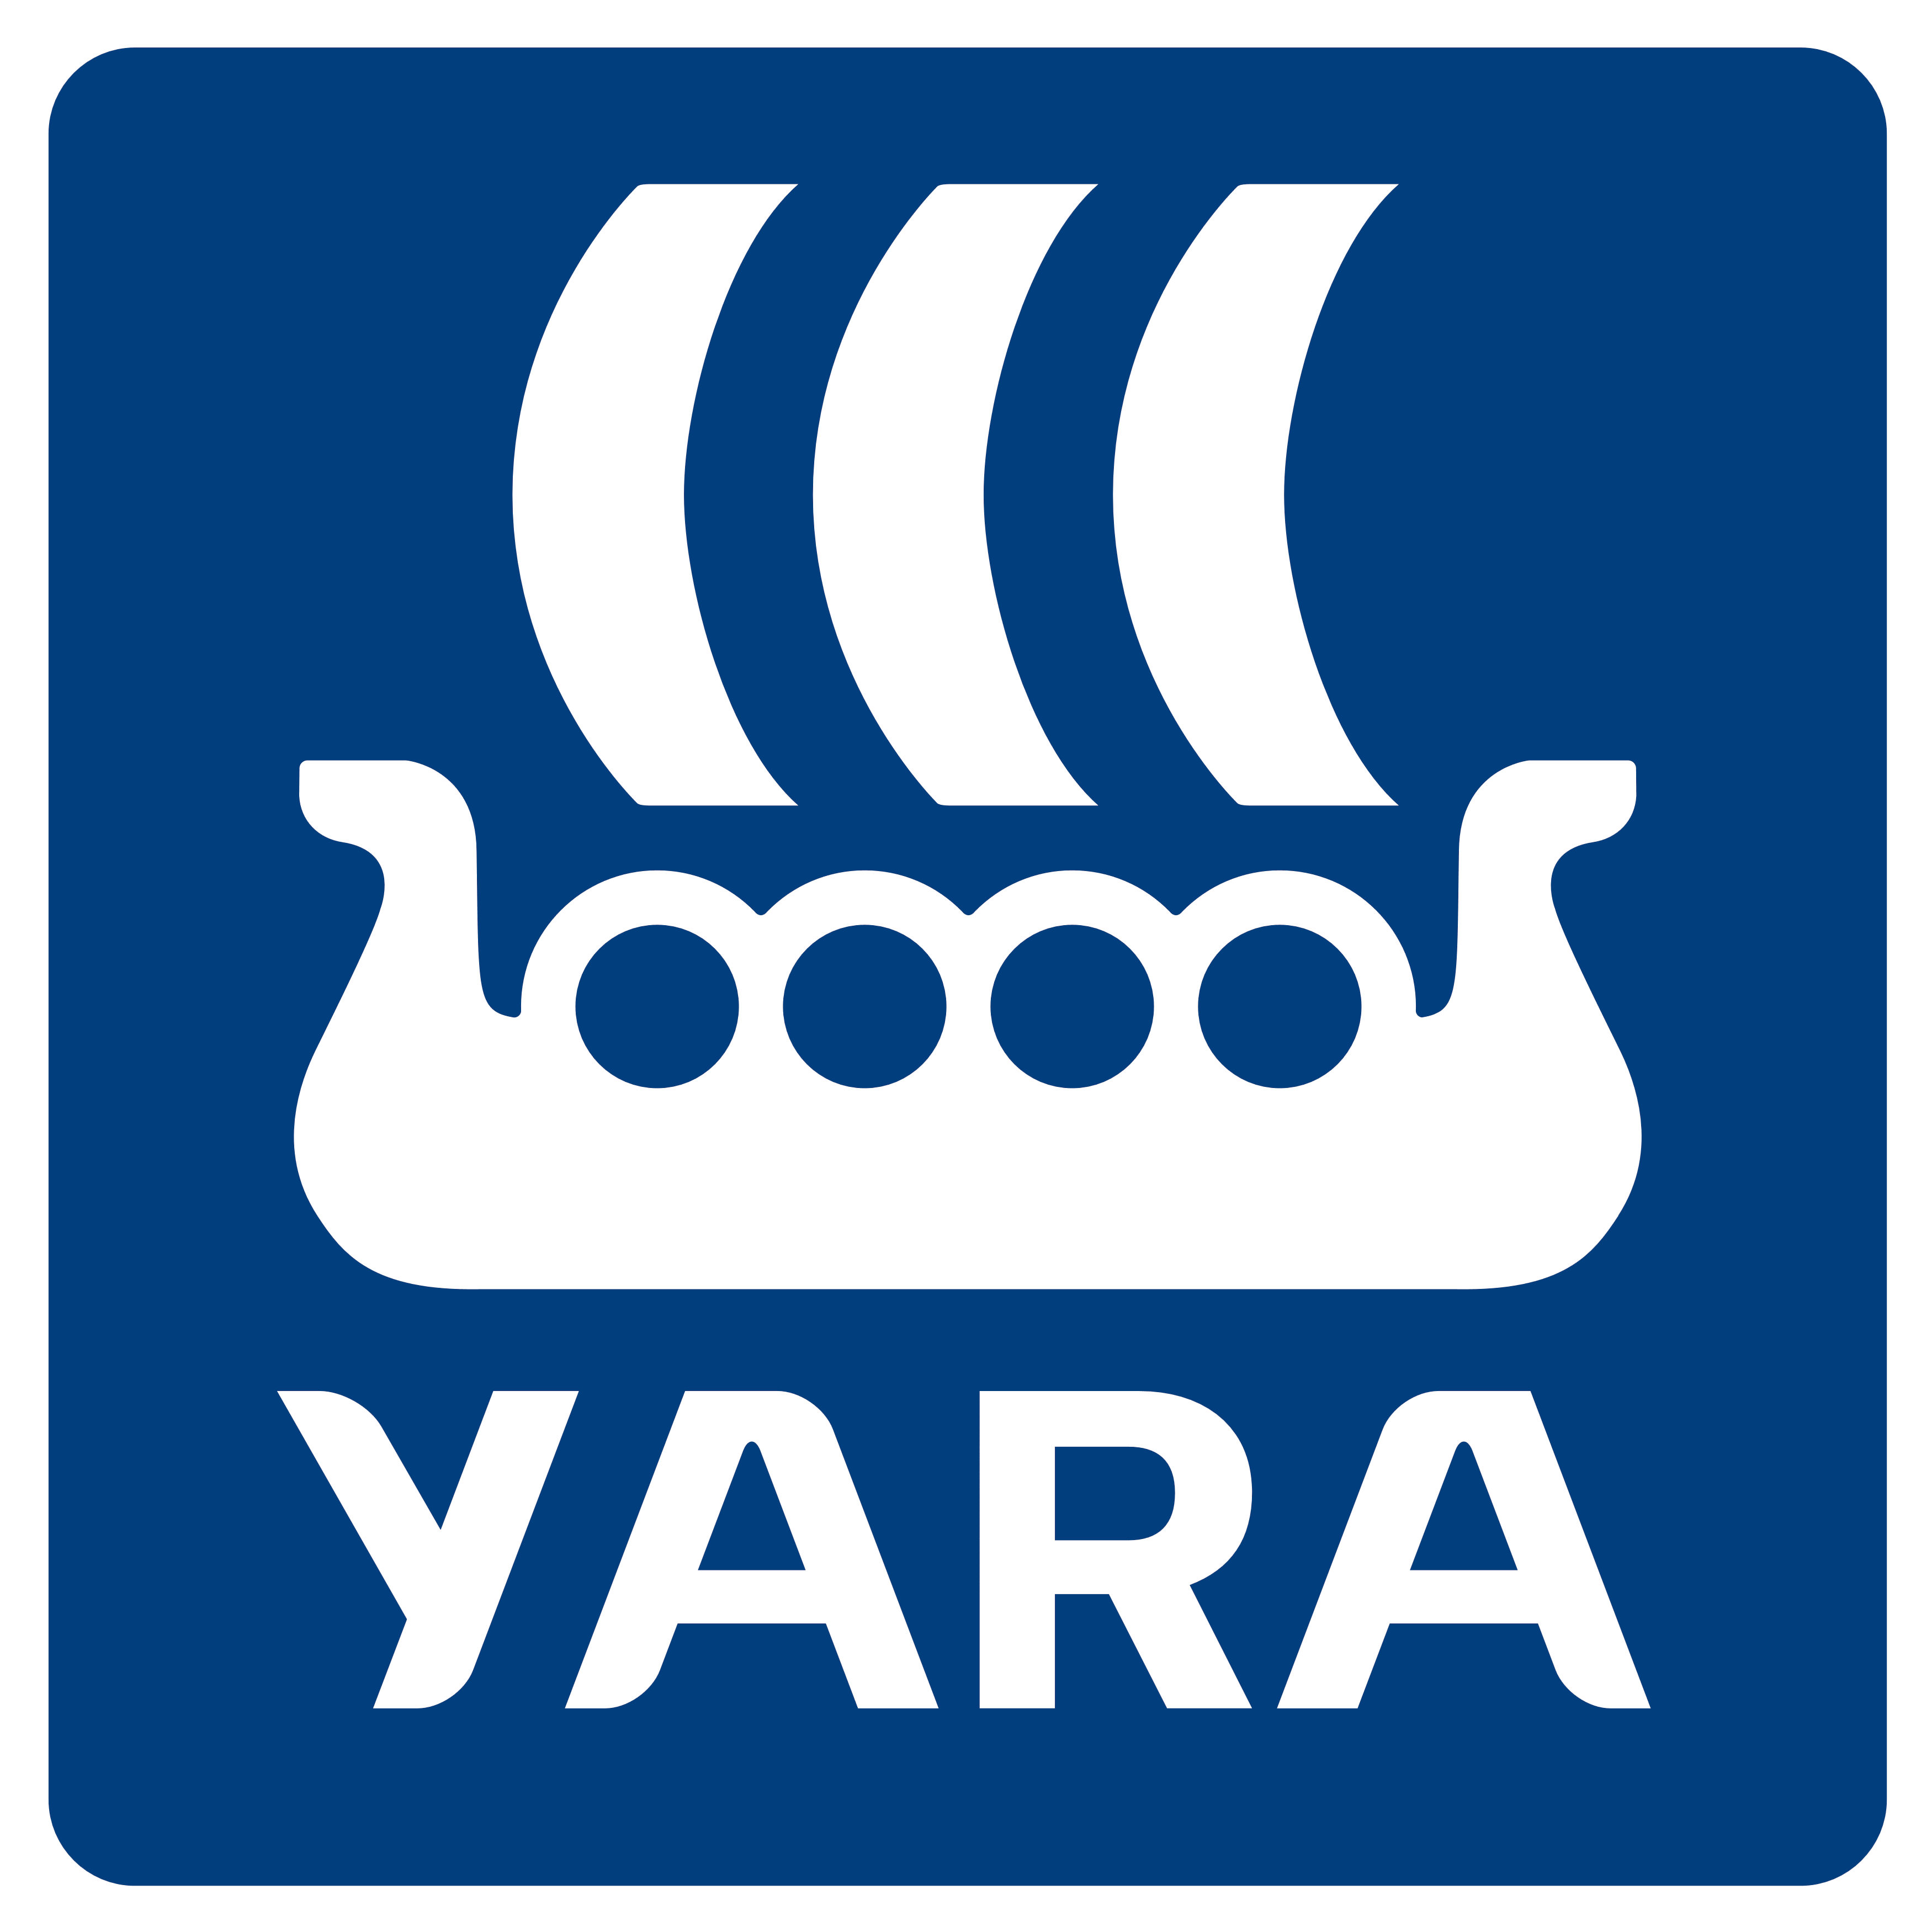 Yara logo, logotype